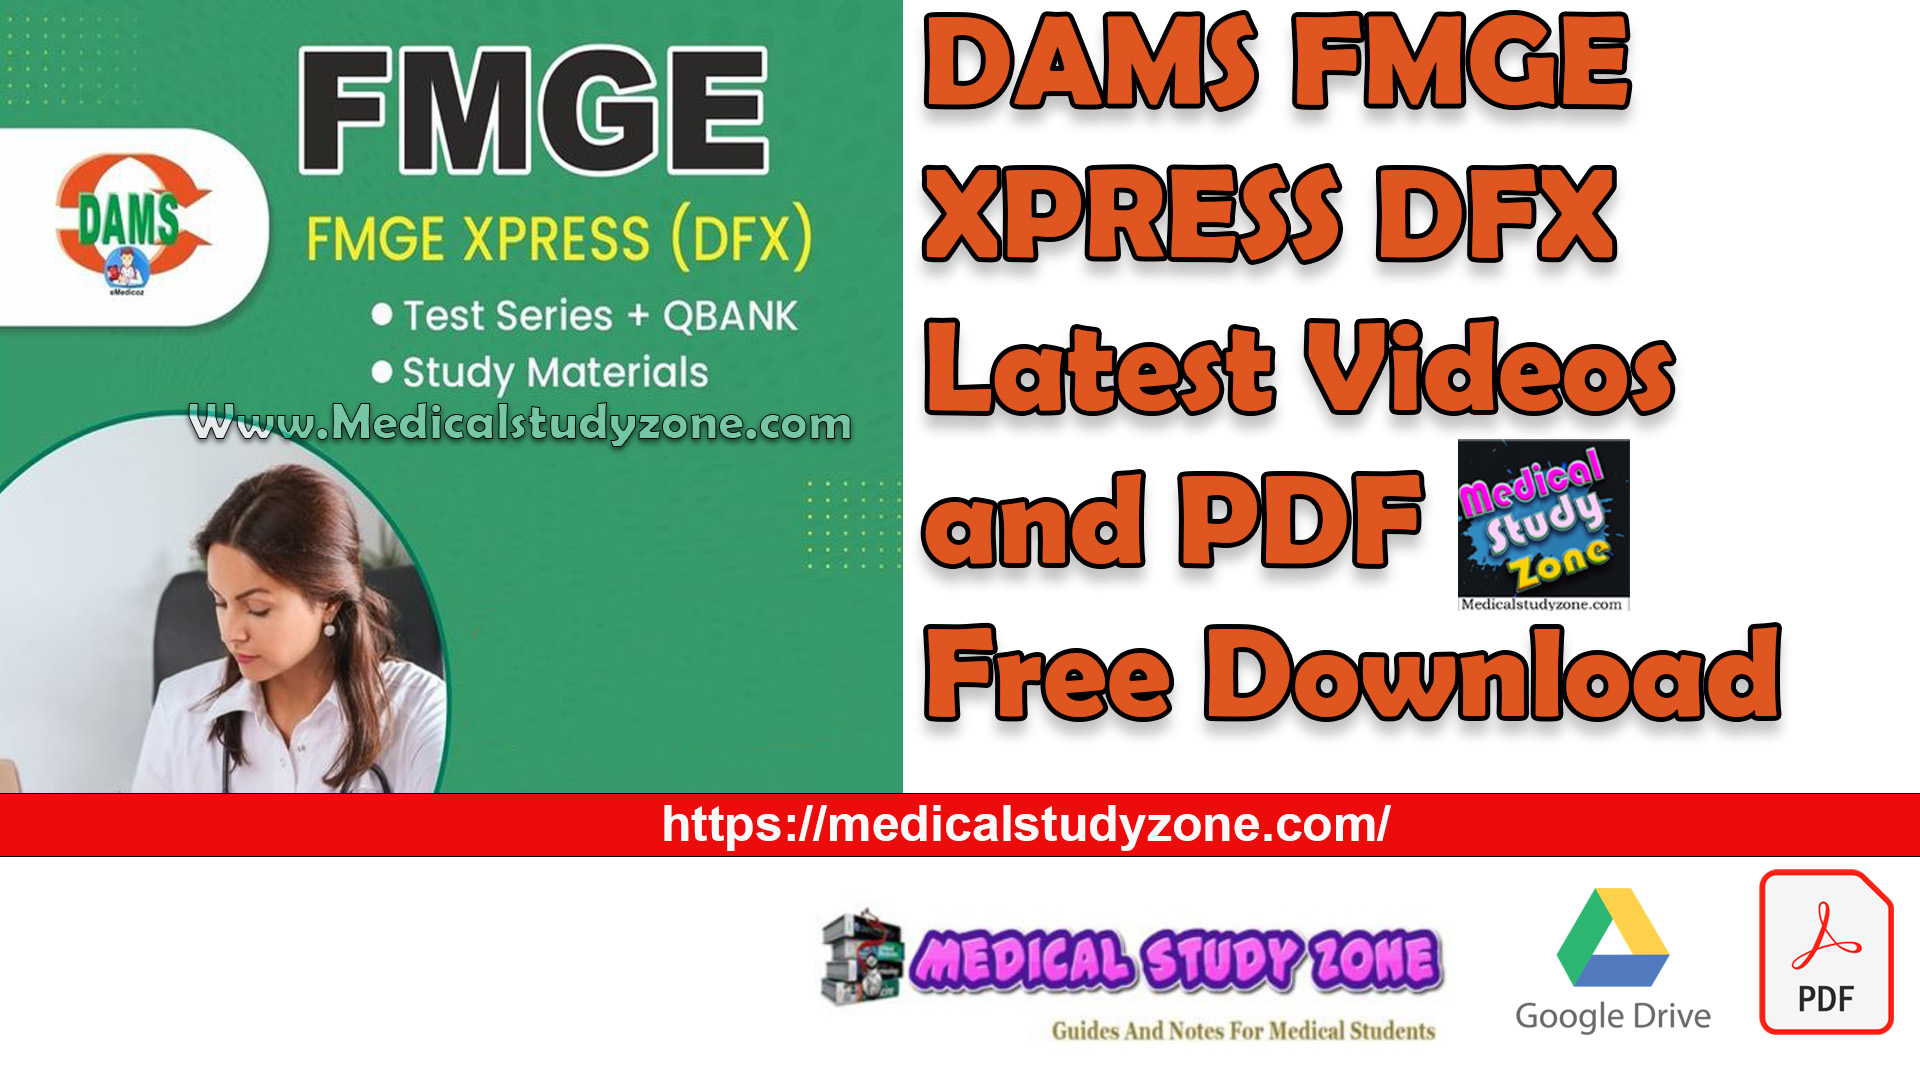 DAMS FMGE XPRESS DFX 2023 Videos and PDF Free Download